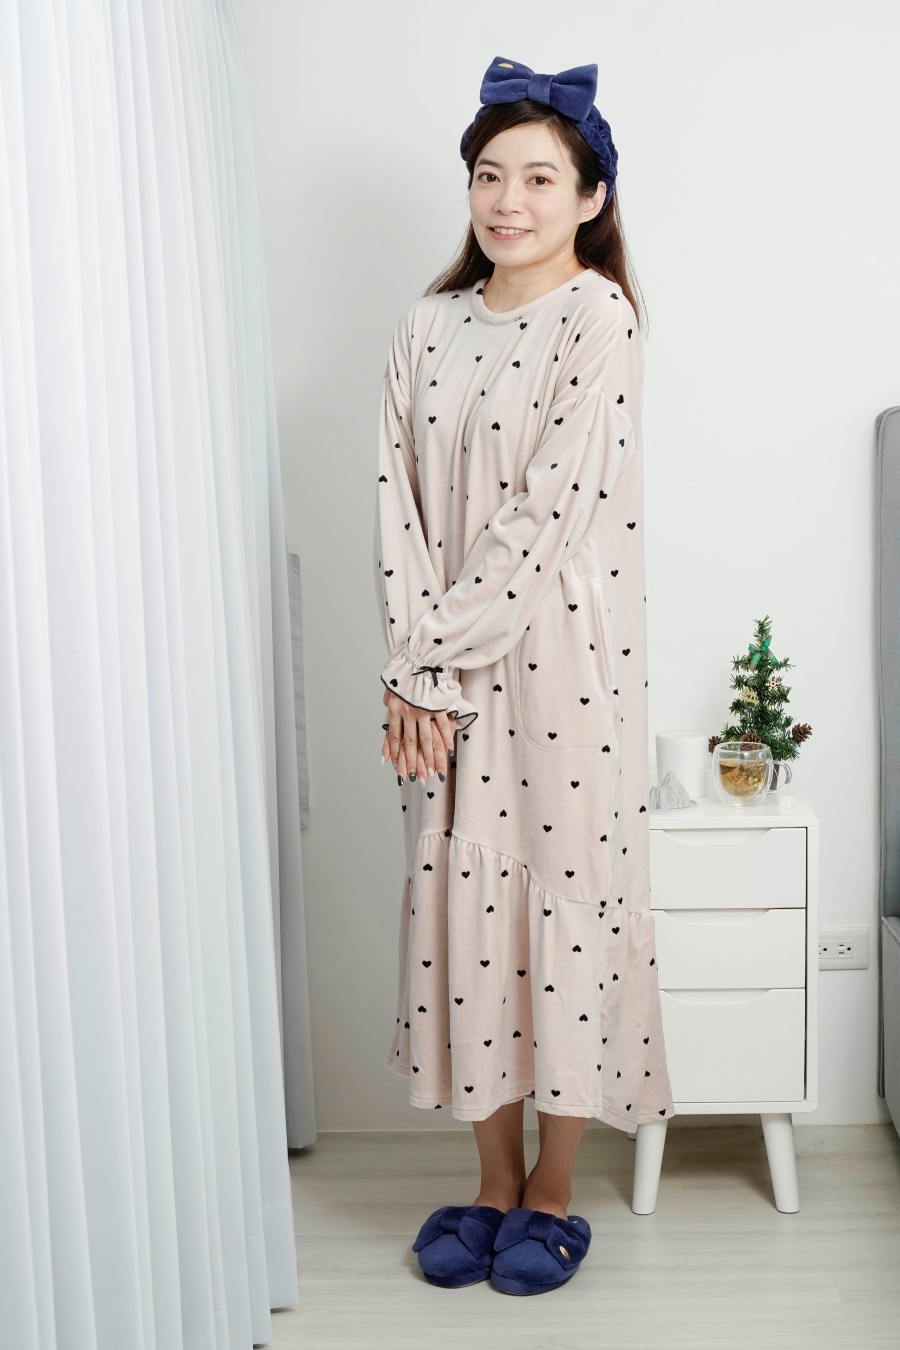 【日本睡衣家居服推薦】Kanaii Boom陪妳度過甜美的冬季睡衣